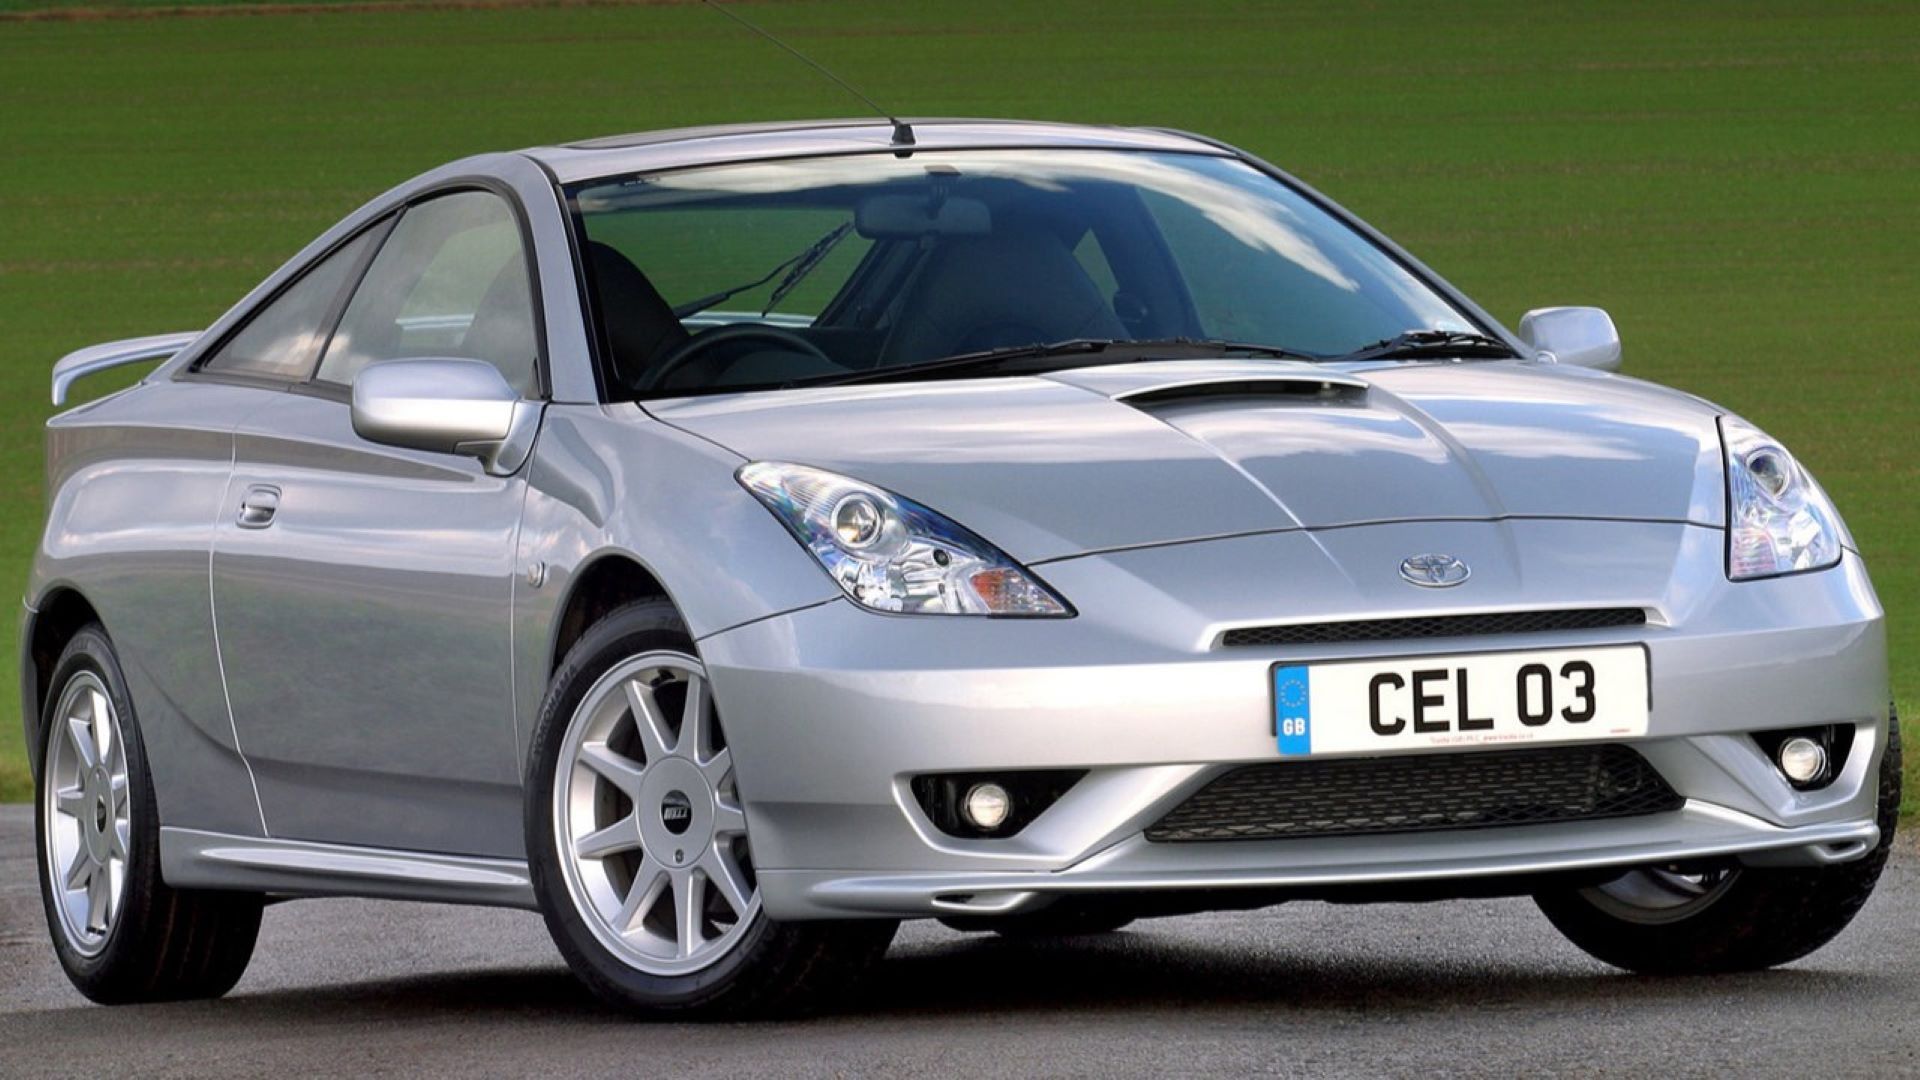 2003 Toyota Celica silver